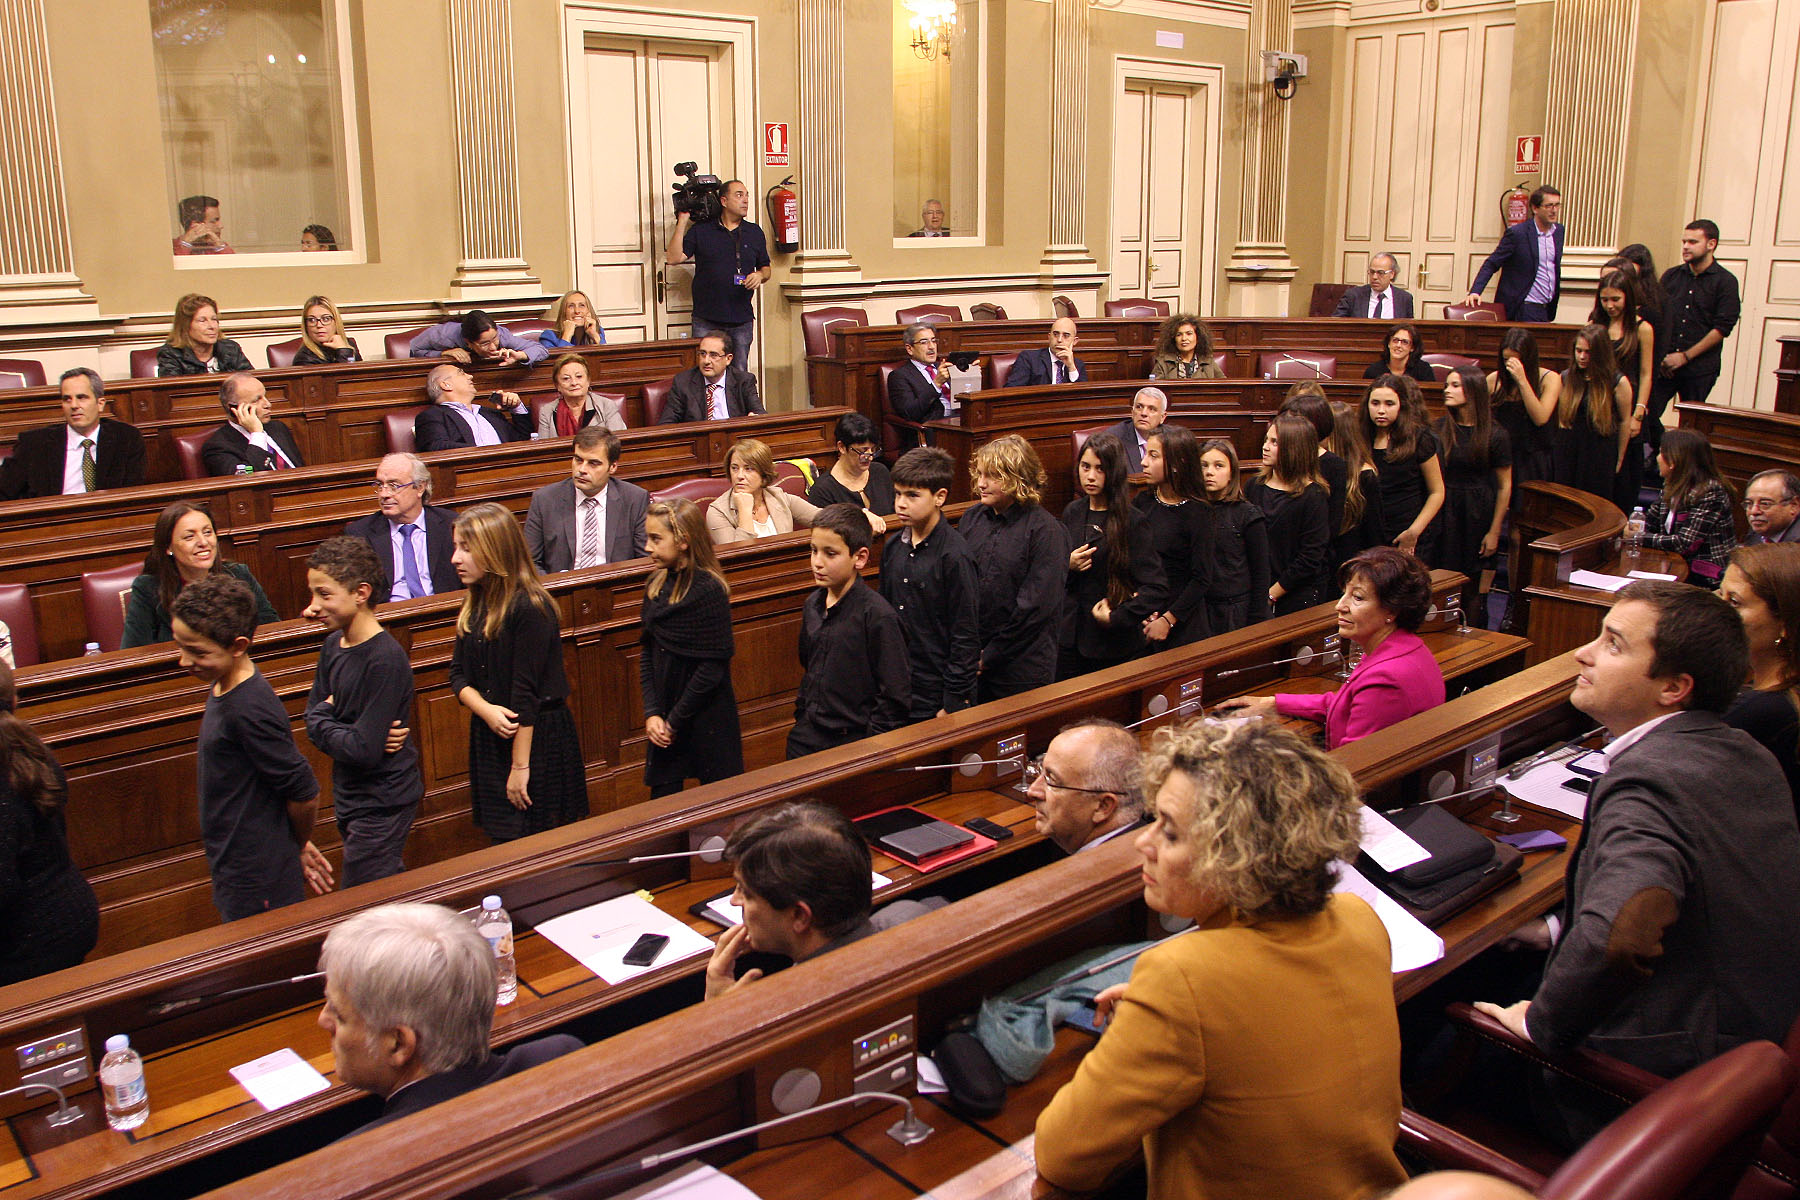 Los villancicos alegran el salón de plenos del Parlamento.